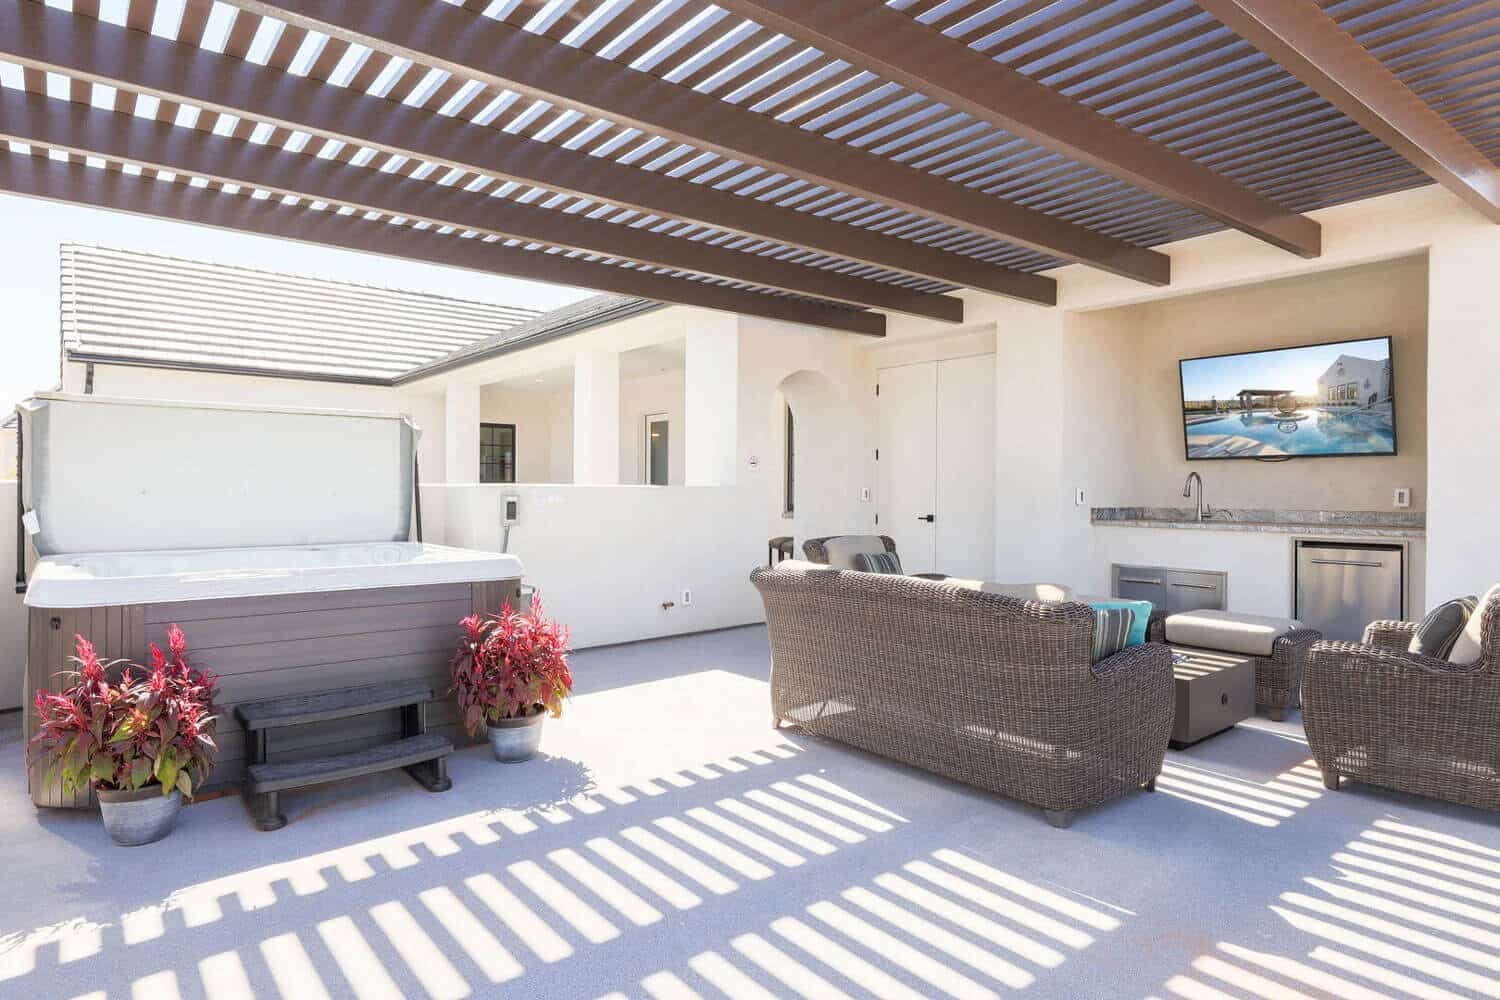 patio luxury vacation home in southern Utah | custom home builder in St George, UT | Dennis Miller Homes